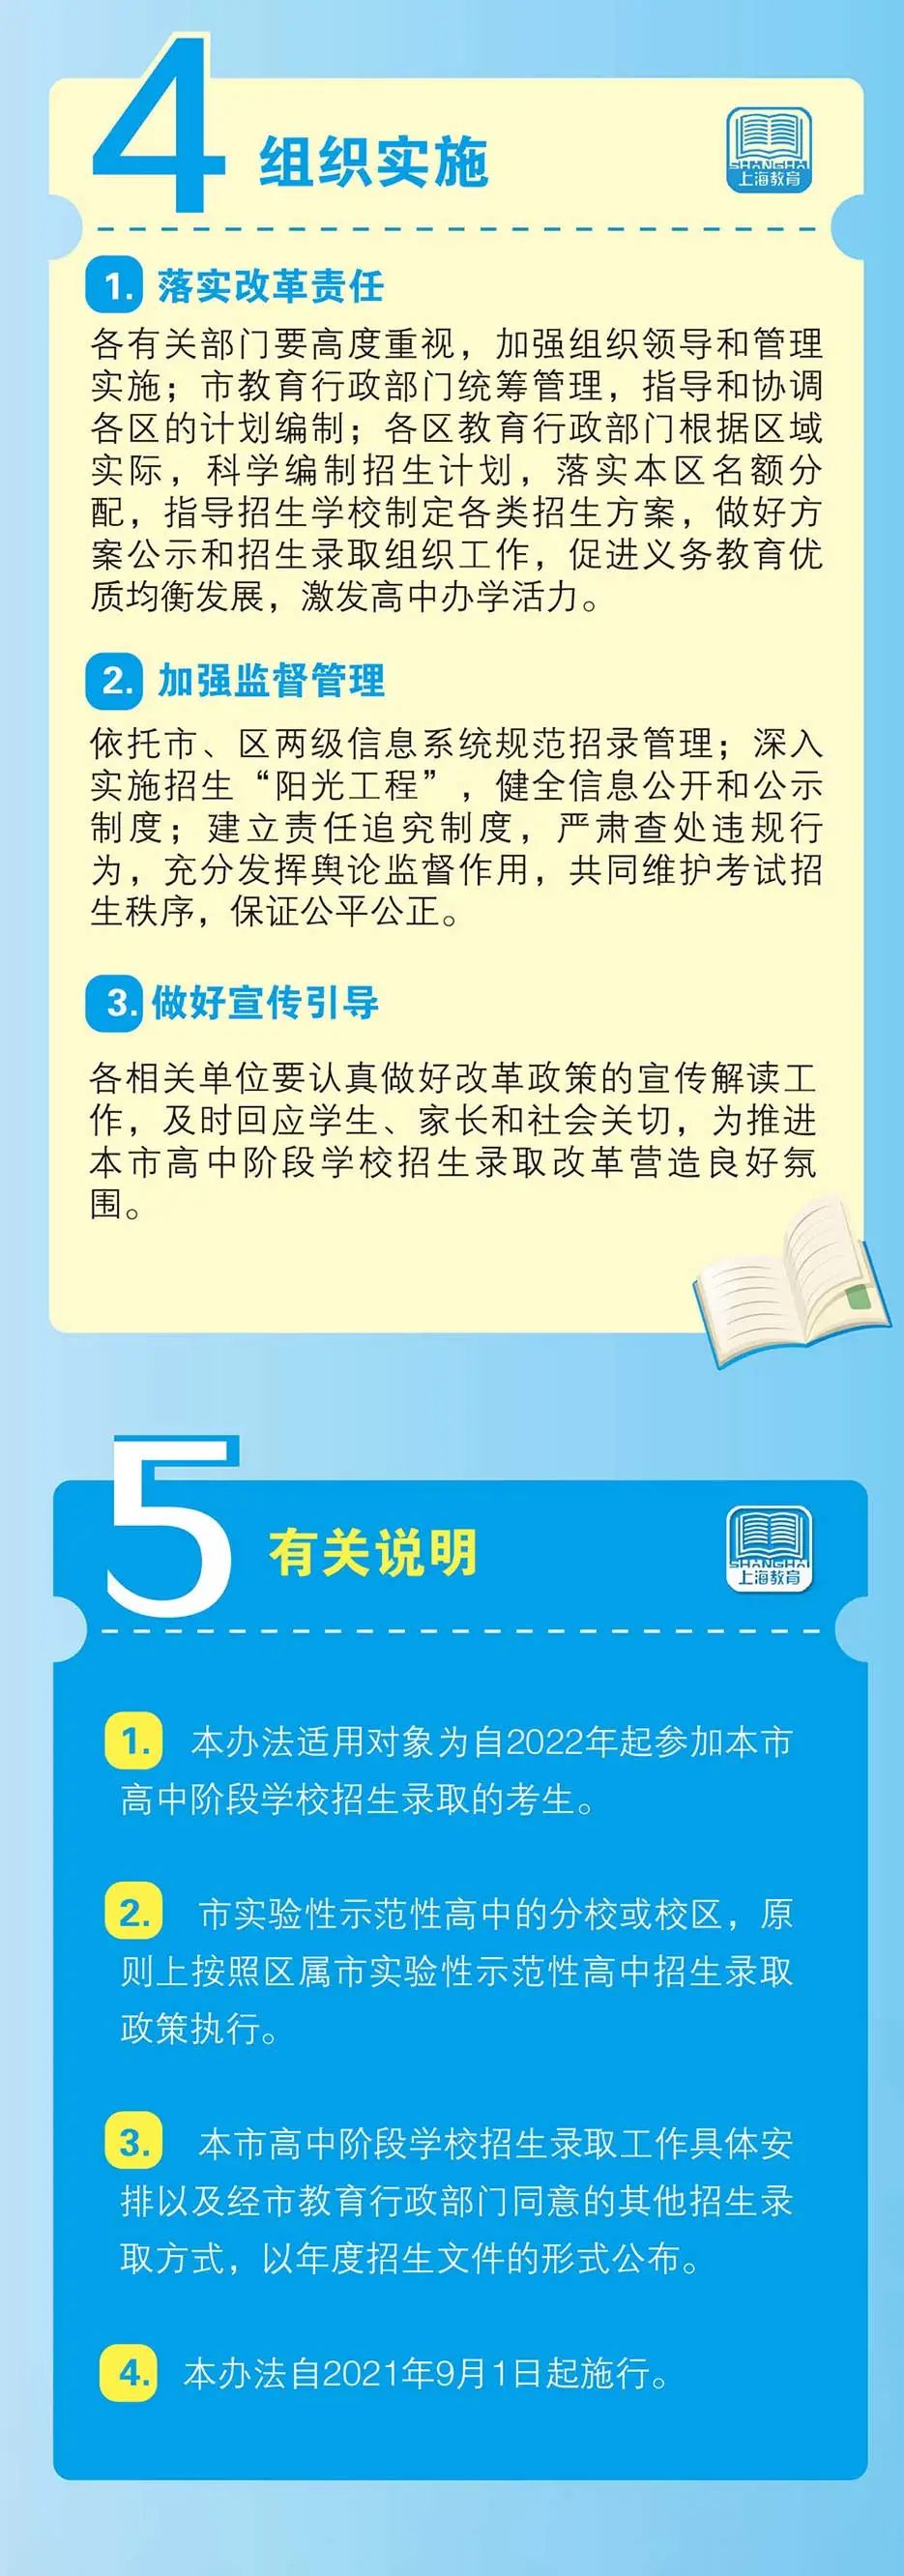 本文图片均来自“上海教育”微信公众号